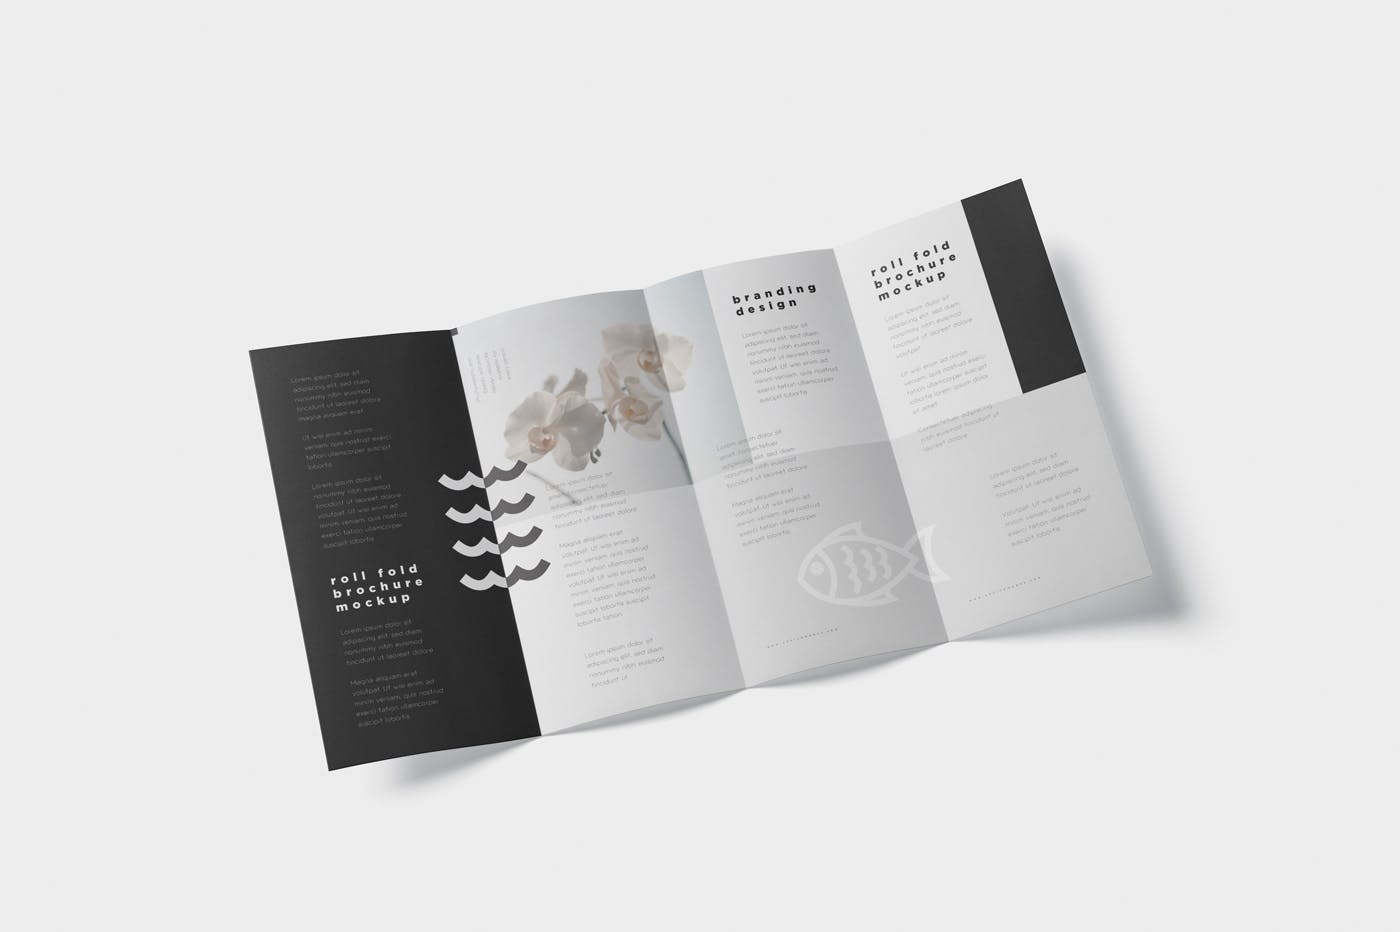 折叠设计风格企业传单/宣传册设计样机16图库精选 Roll-Fold Brochure Mockup – DL DIN Lang Size插图(2)